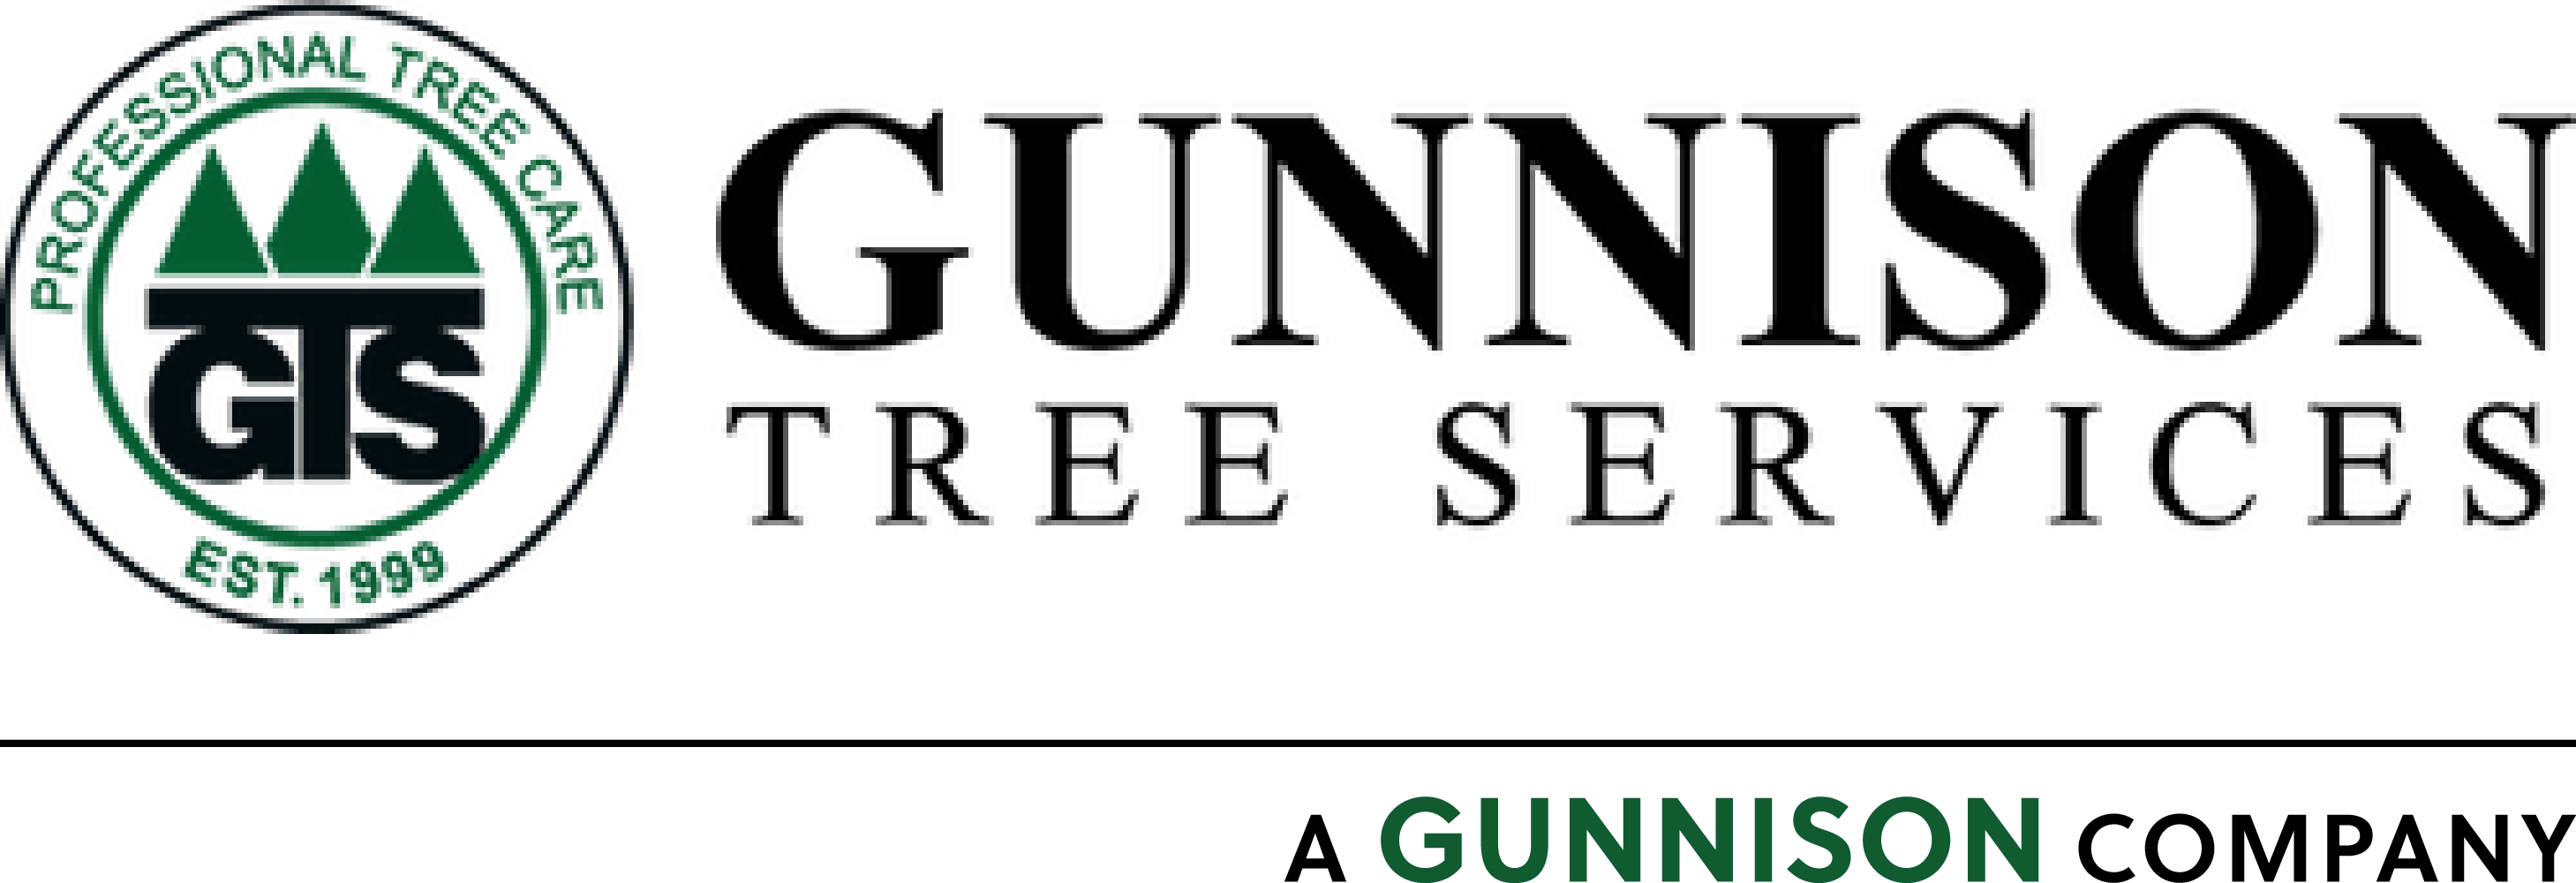 Gunnison Tree Services LLC Logo